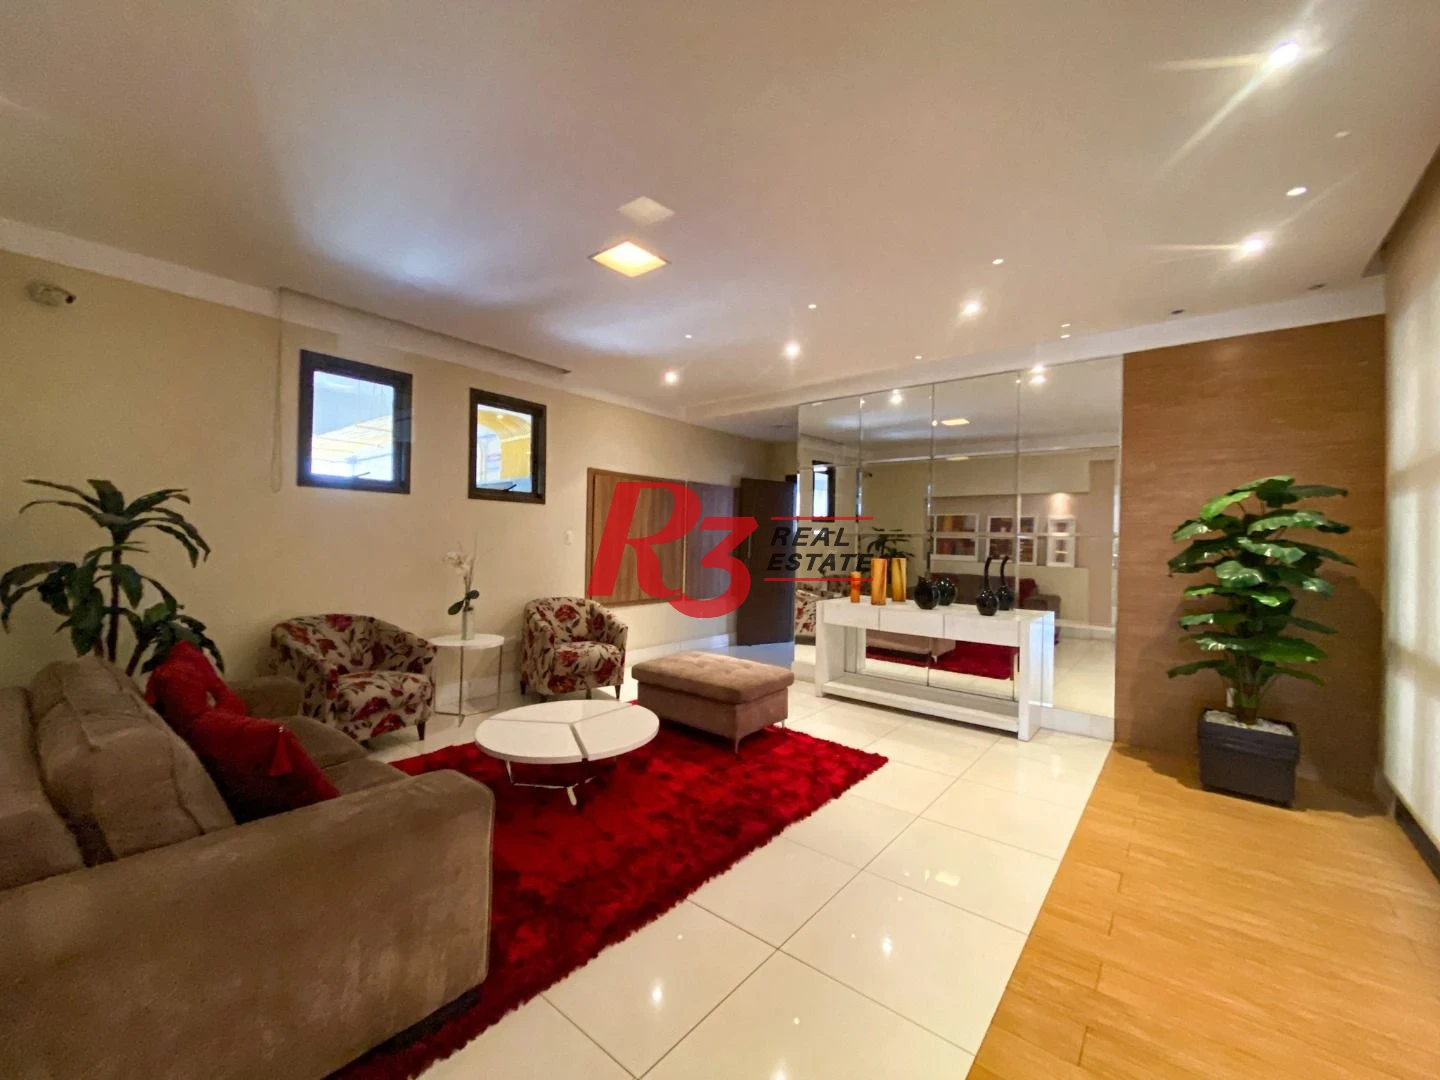 Apartamento com 2 dormitórios à venda, 81 m² - Encruzilhada - Santos/SP